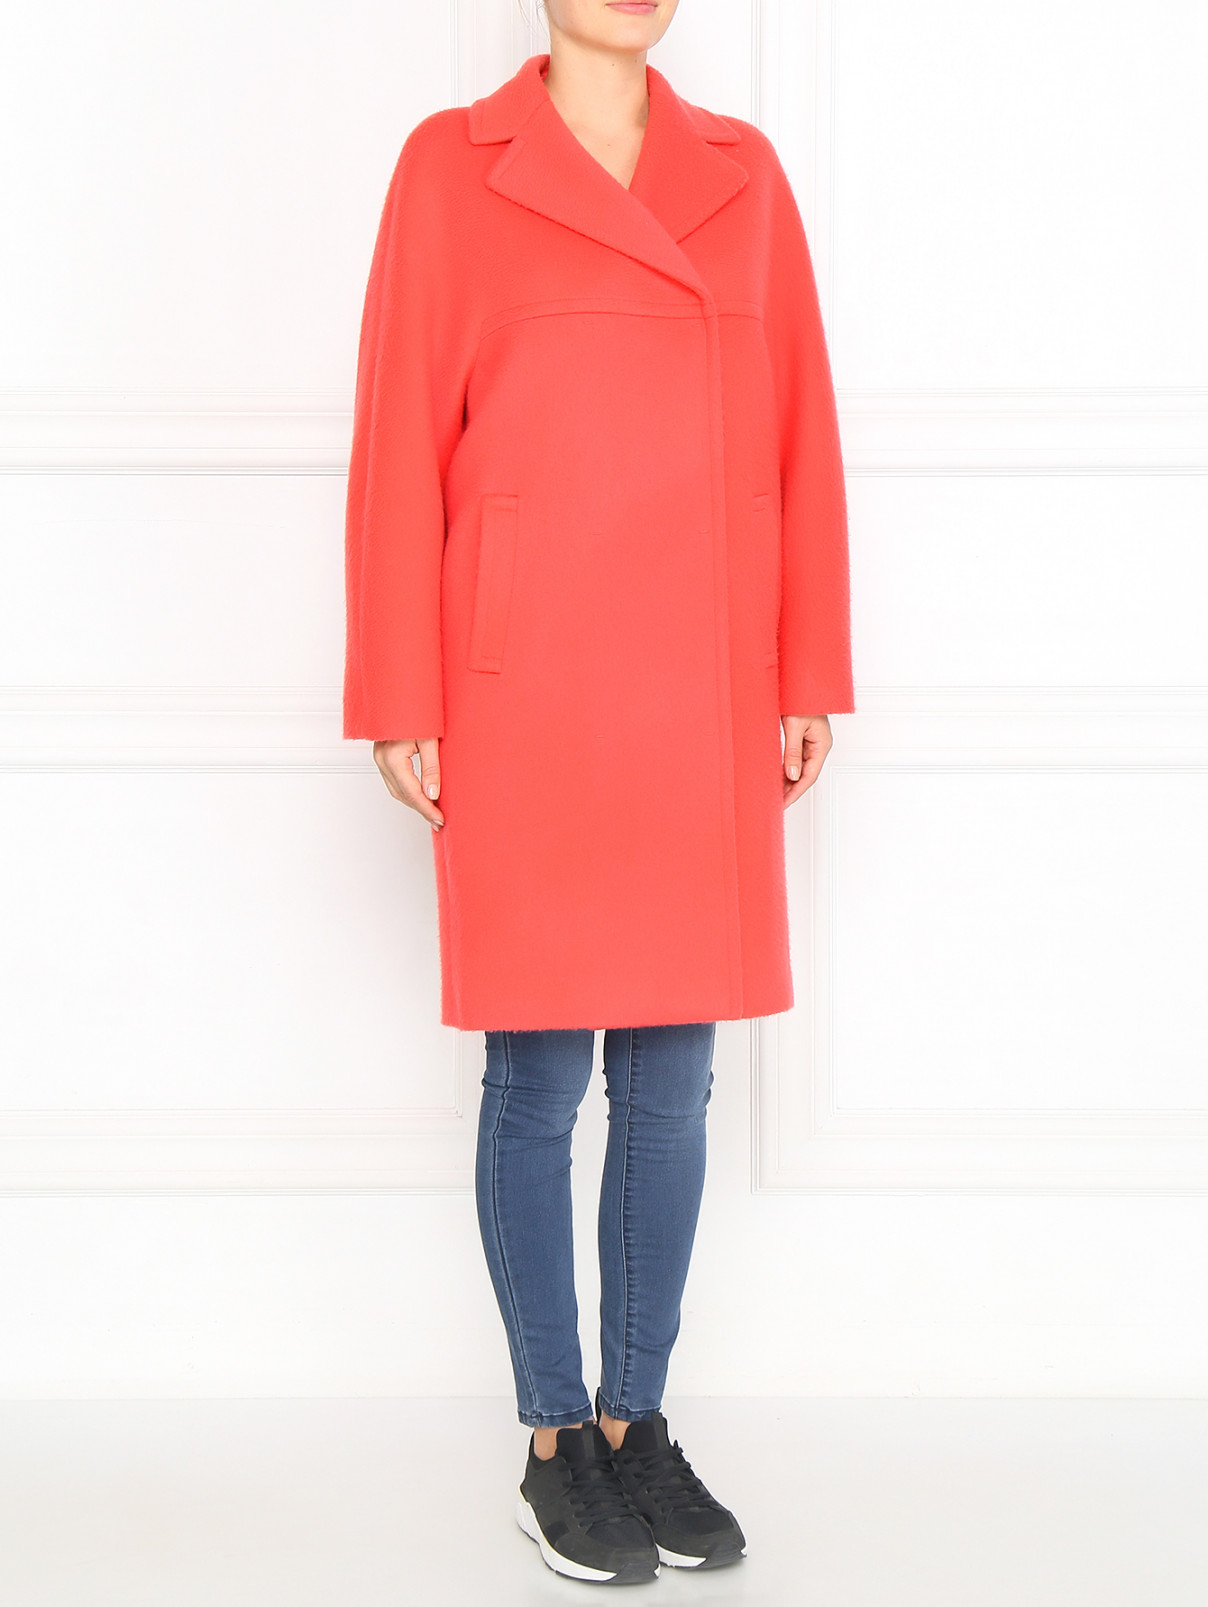 Пальто свободного кроя из шерсти Giambattista Valli  –  Модель Общий вид  – Цвет:  Красный